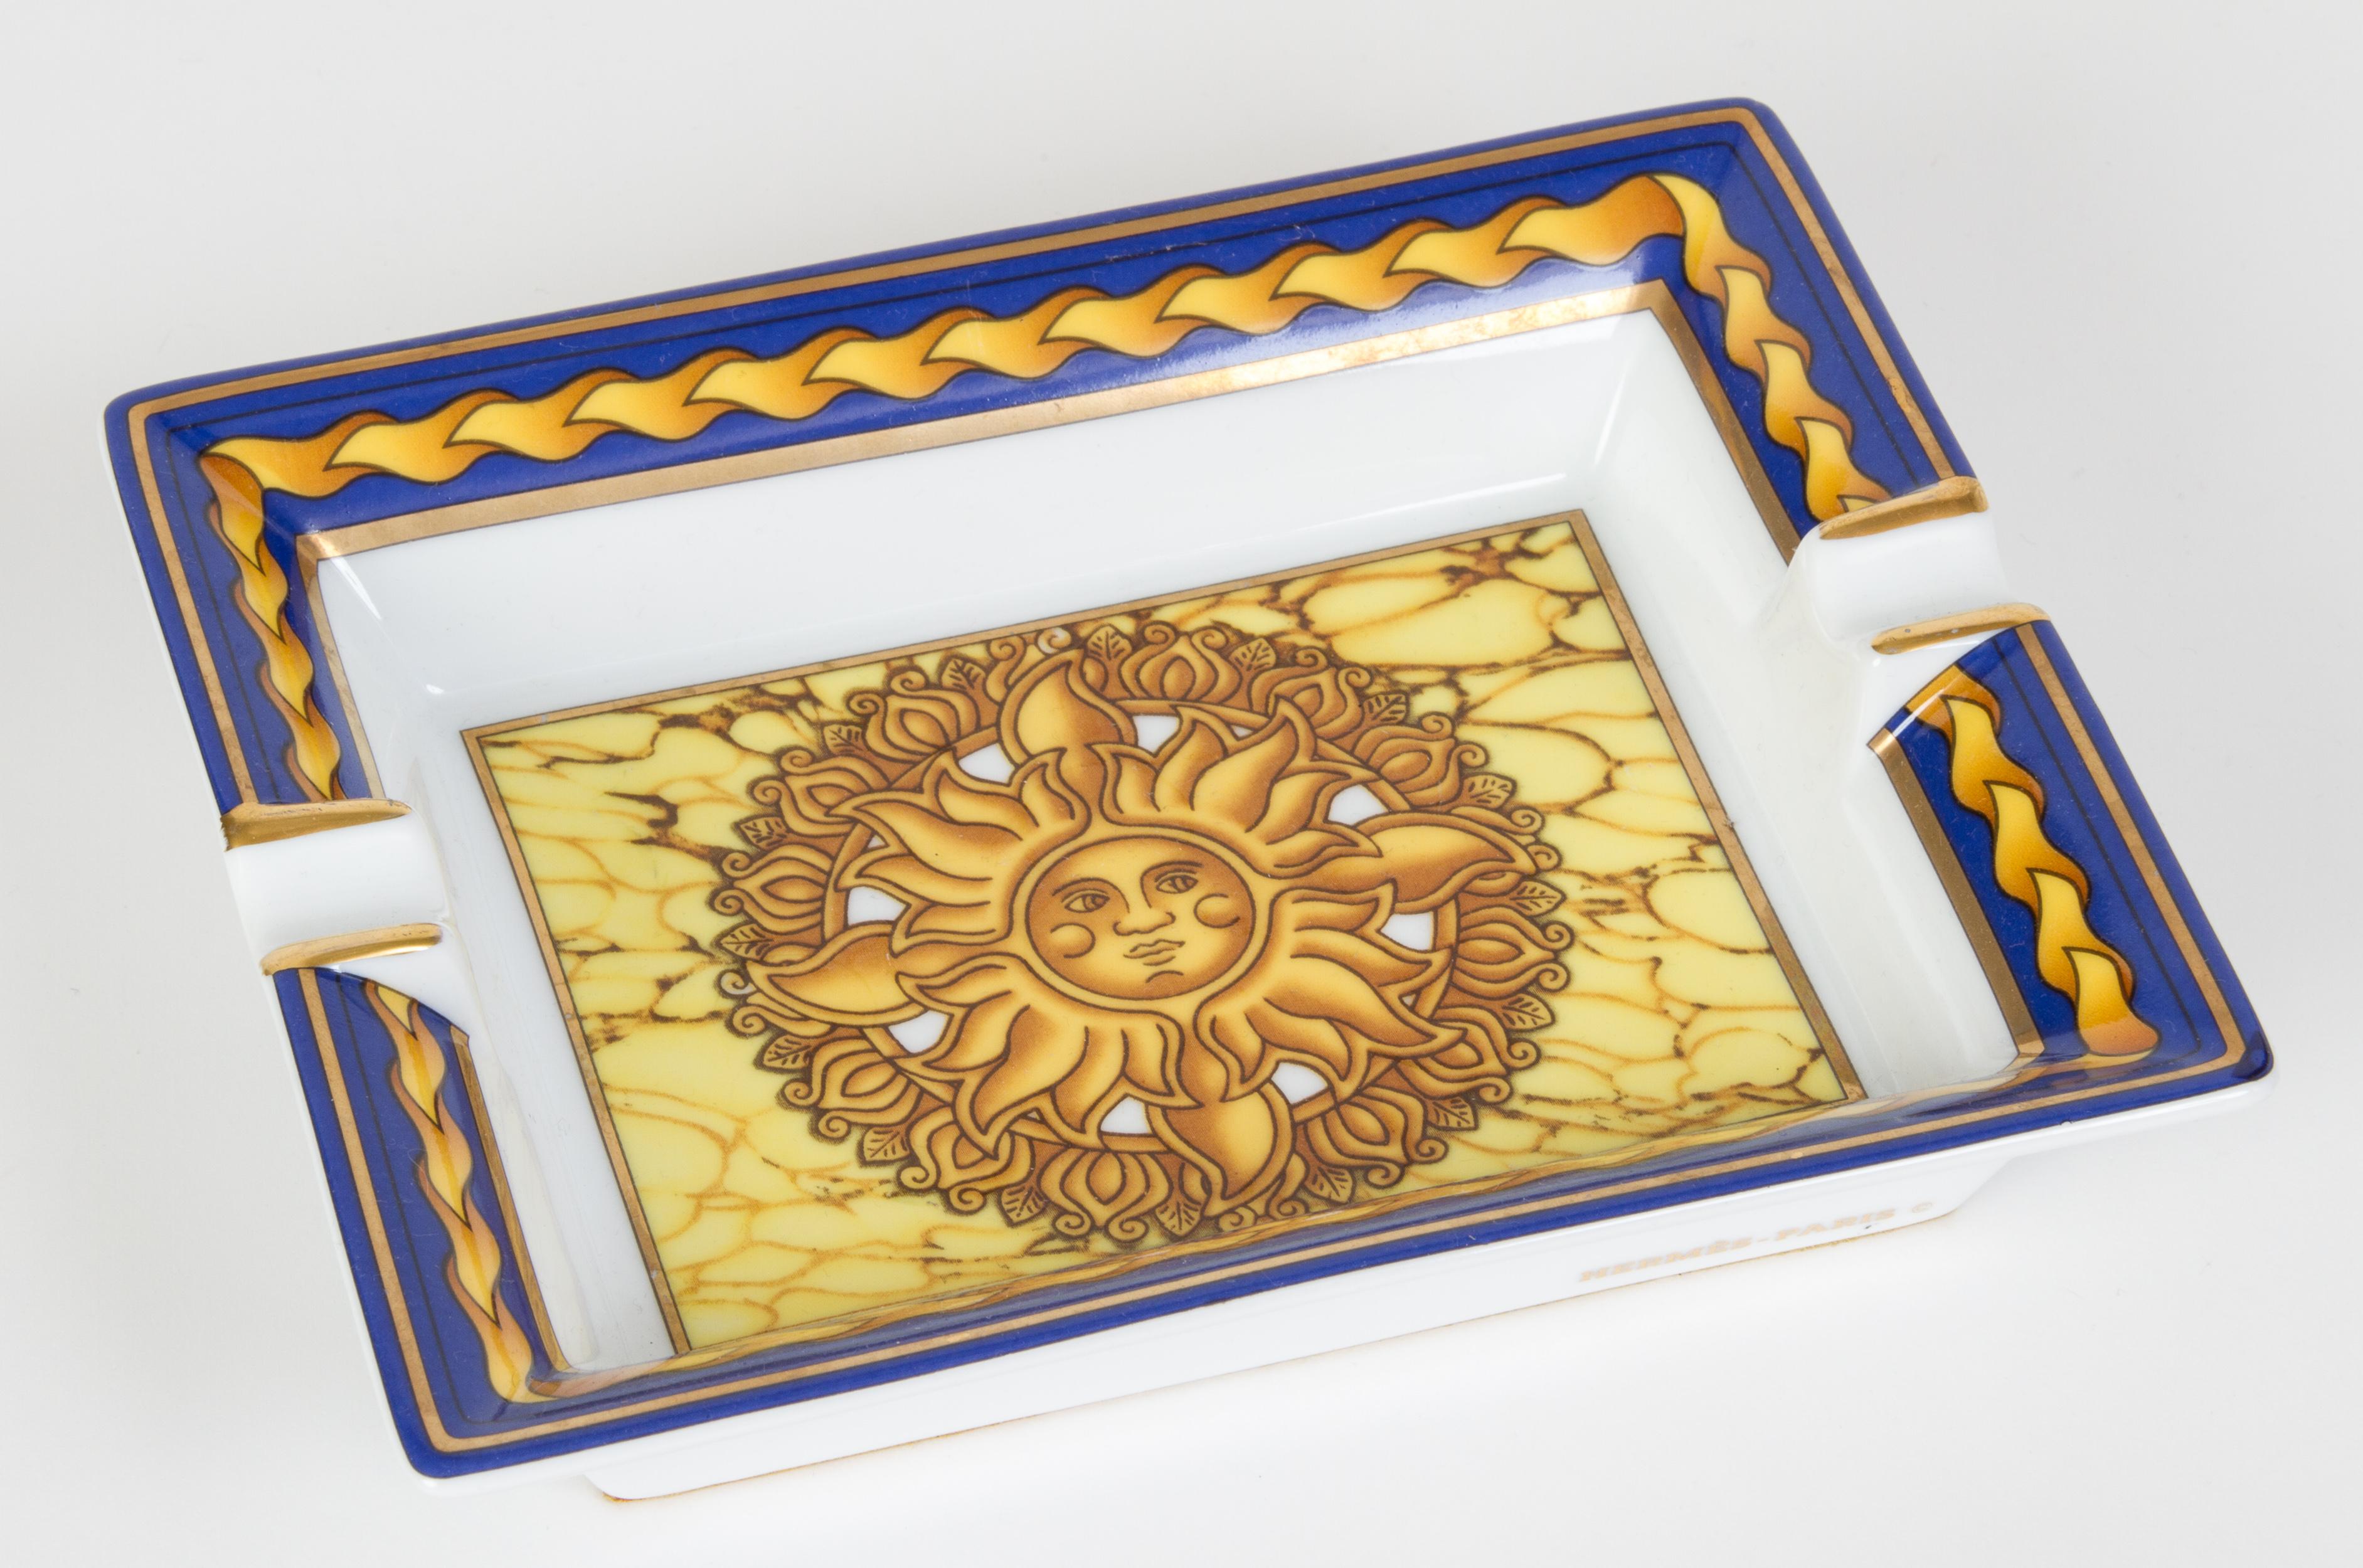 Hermès rectangular soleil design porcelain ashtray. Excellent condition.